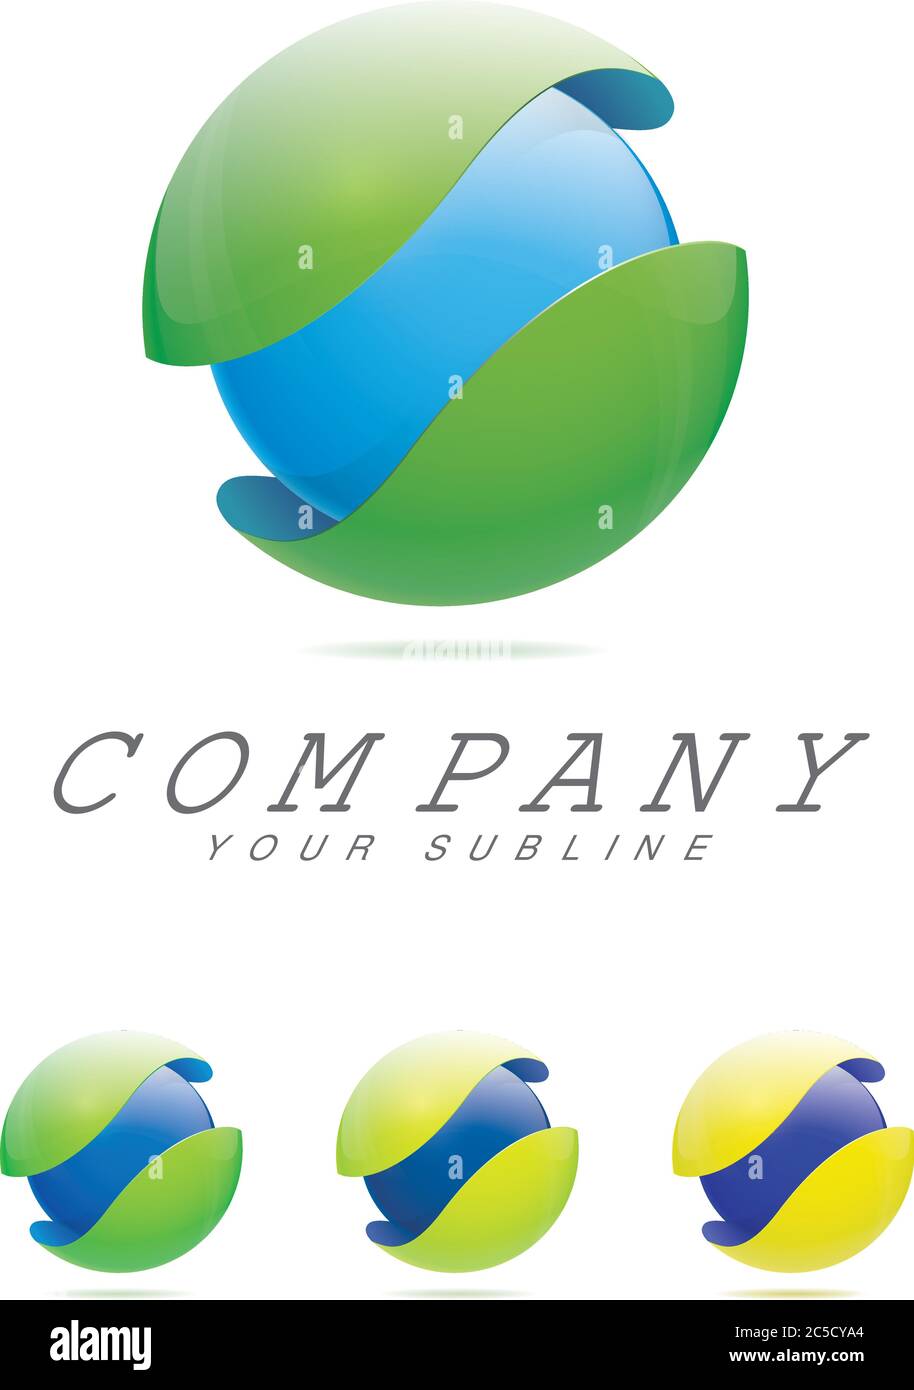 Abstract Firmenlogo Vorlage - blaue Kugel in Schutzhülle mit Farbvariationen von grün bis gelb Stock Vektor